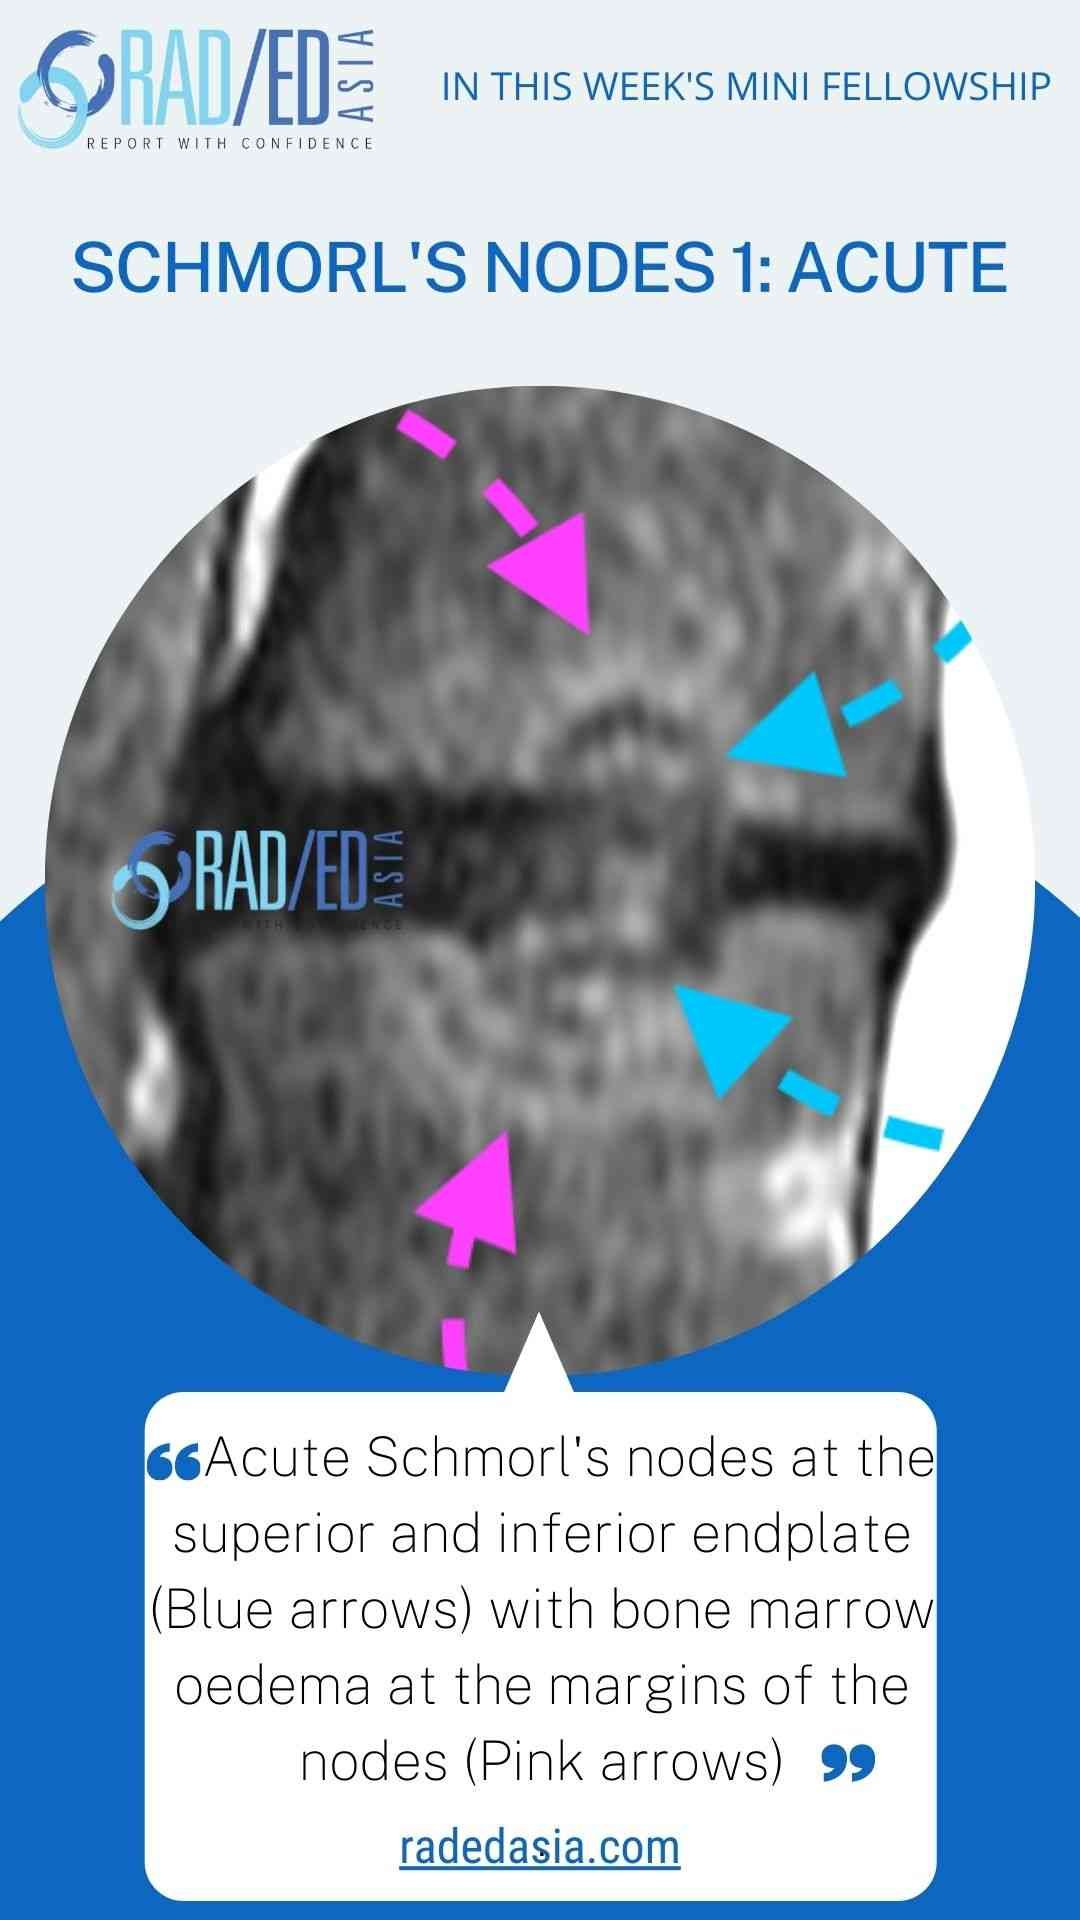 schmorl's node acute spine mri radedasia